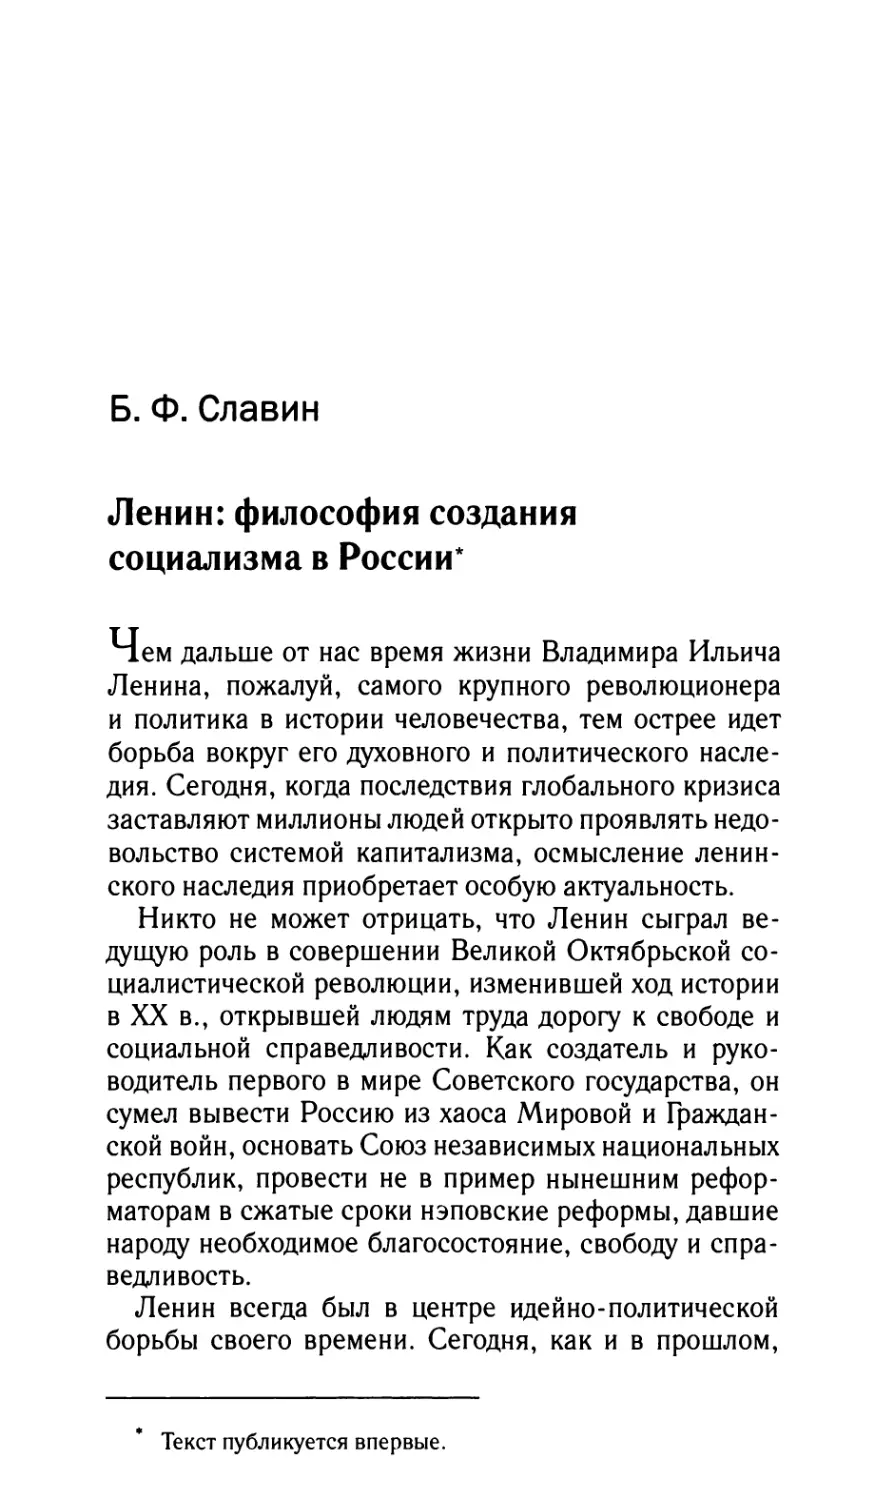 Славин Б.Ф. Ленин: философия создания социализма в России